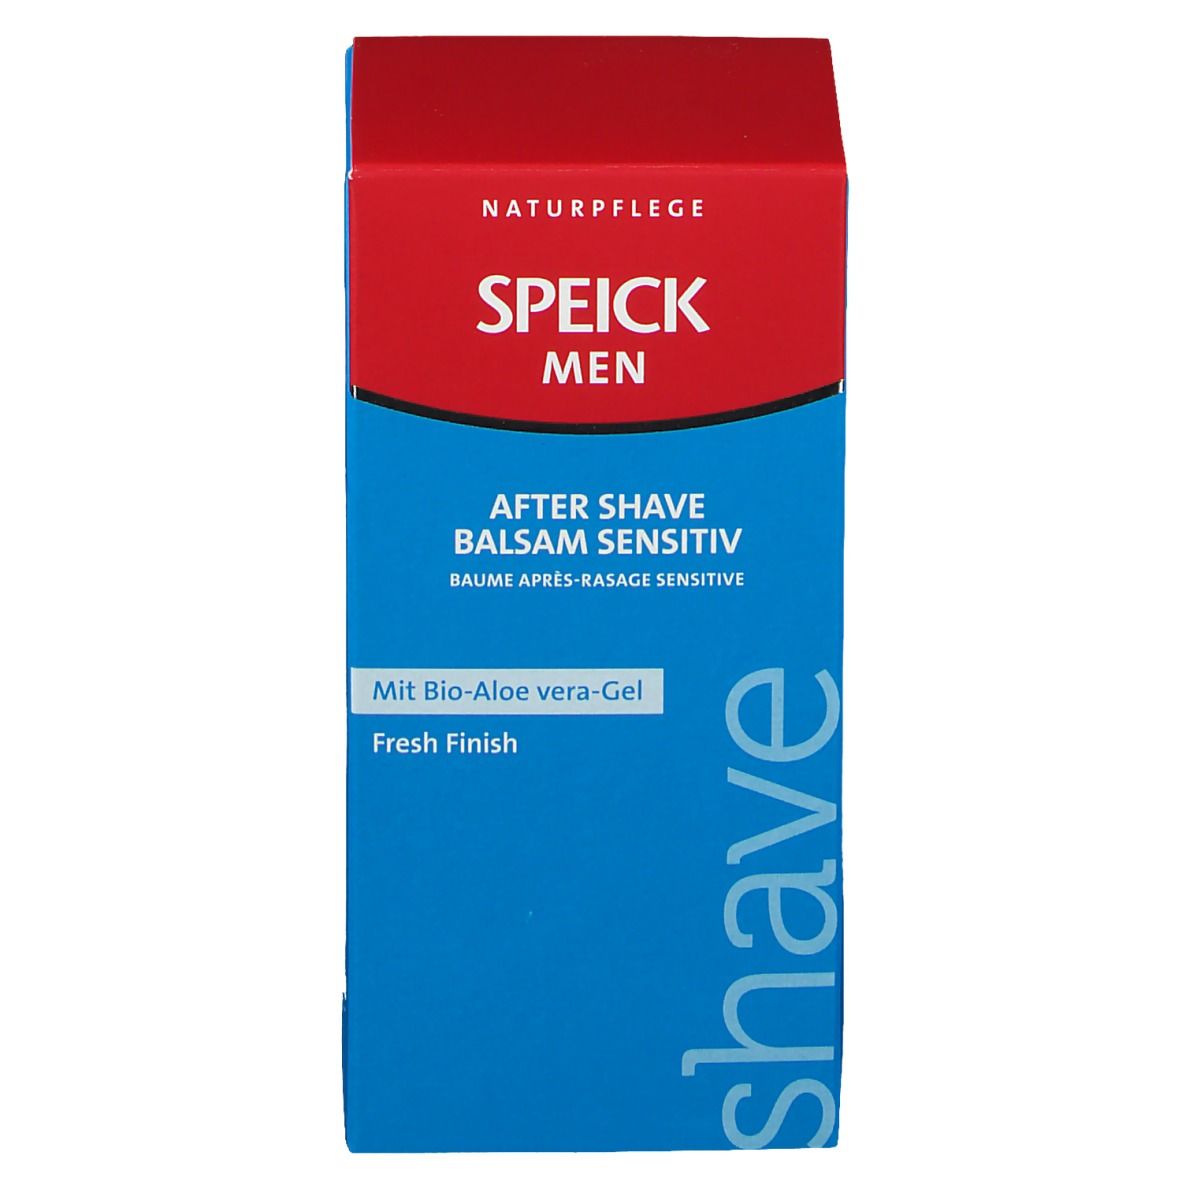 SPEICK Men After Shave Balsam Sensitiv